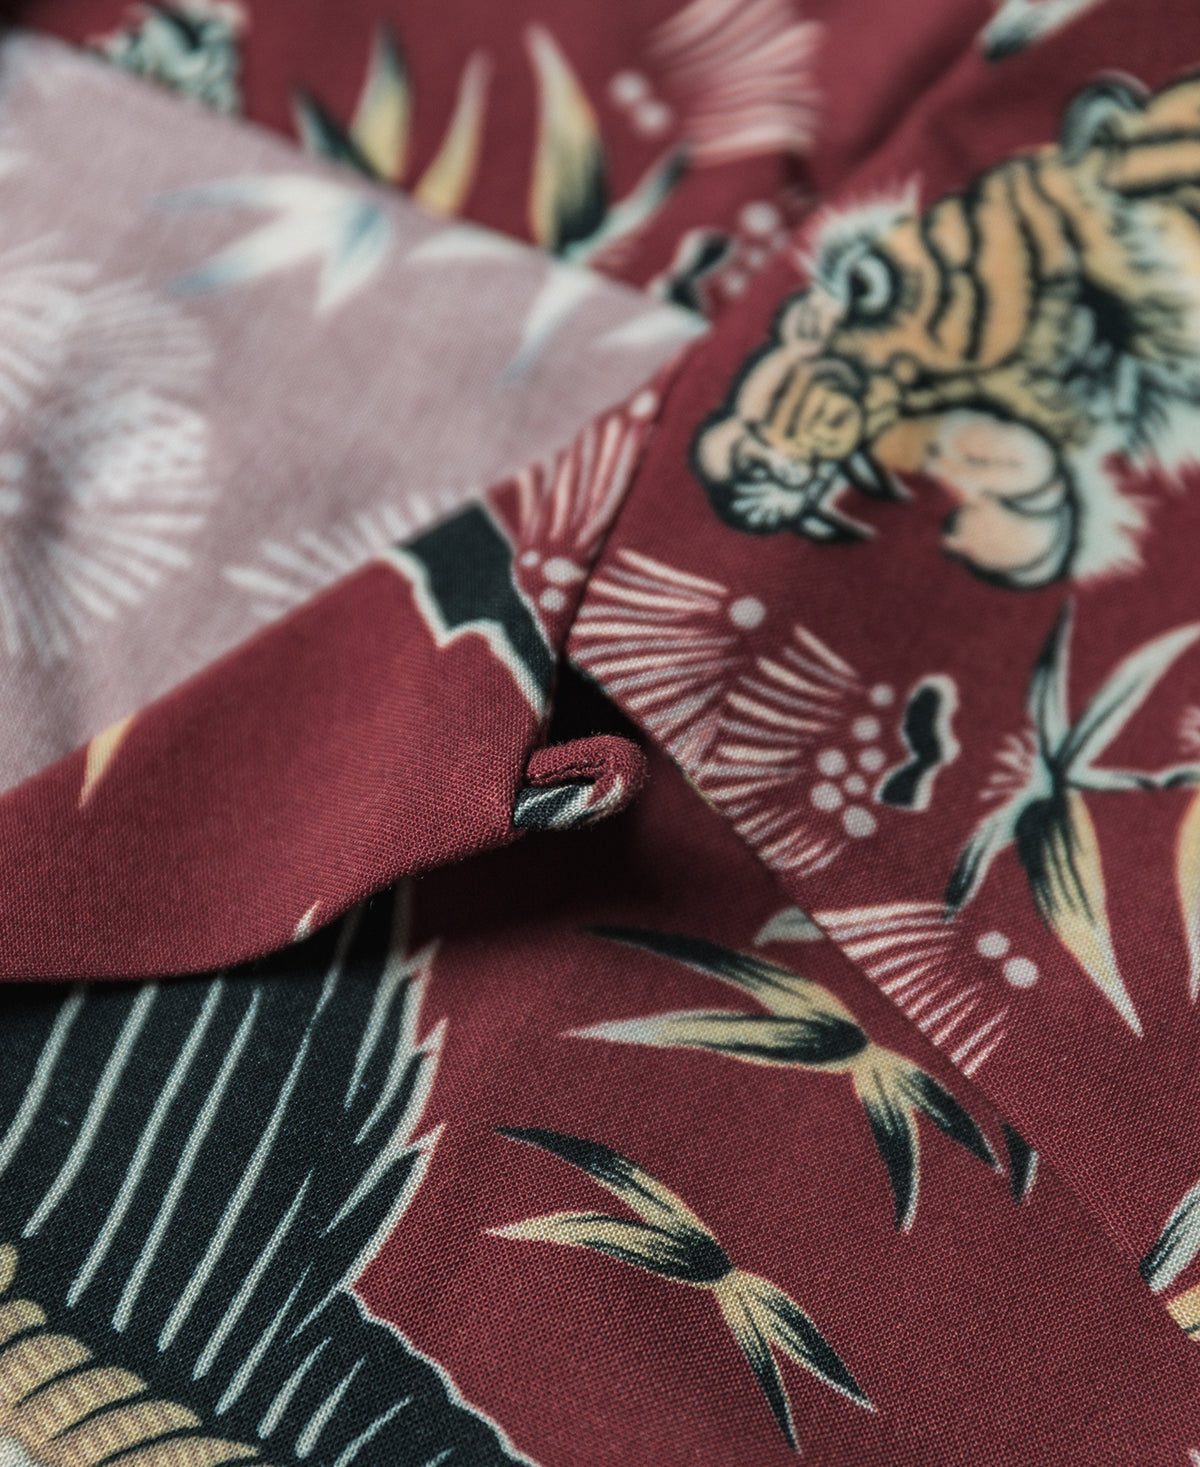 Ukiyo-e Tiger &amp; Crane Pattern Aloha Shirt - Wine Red